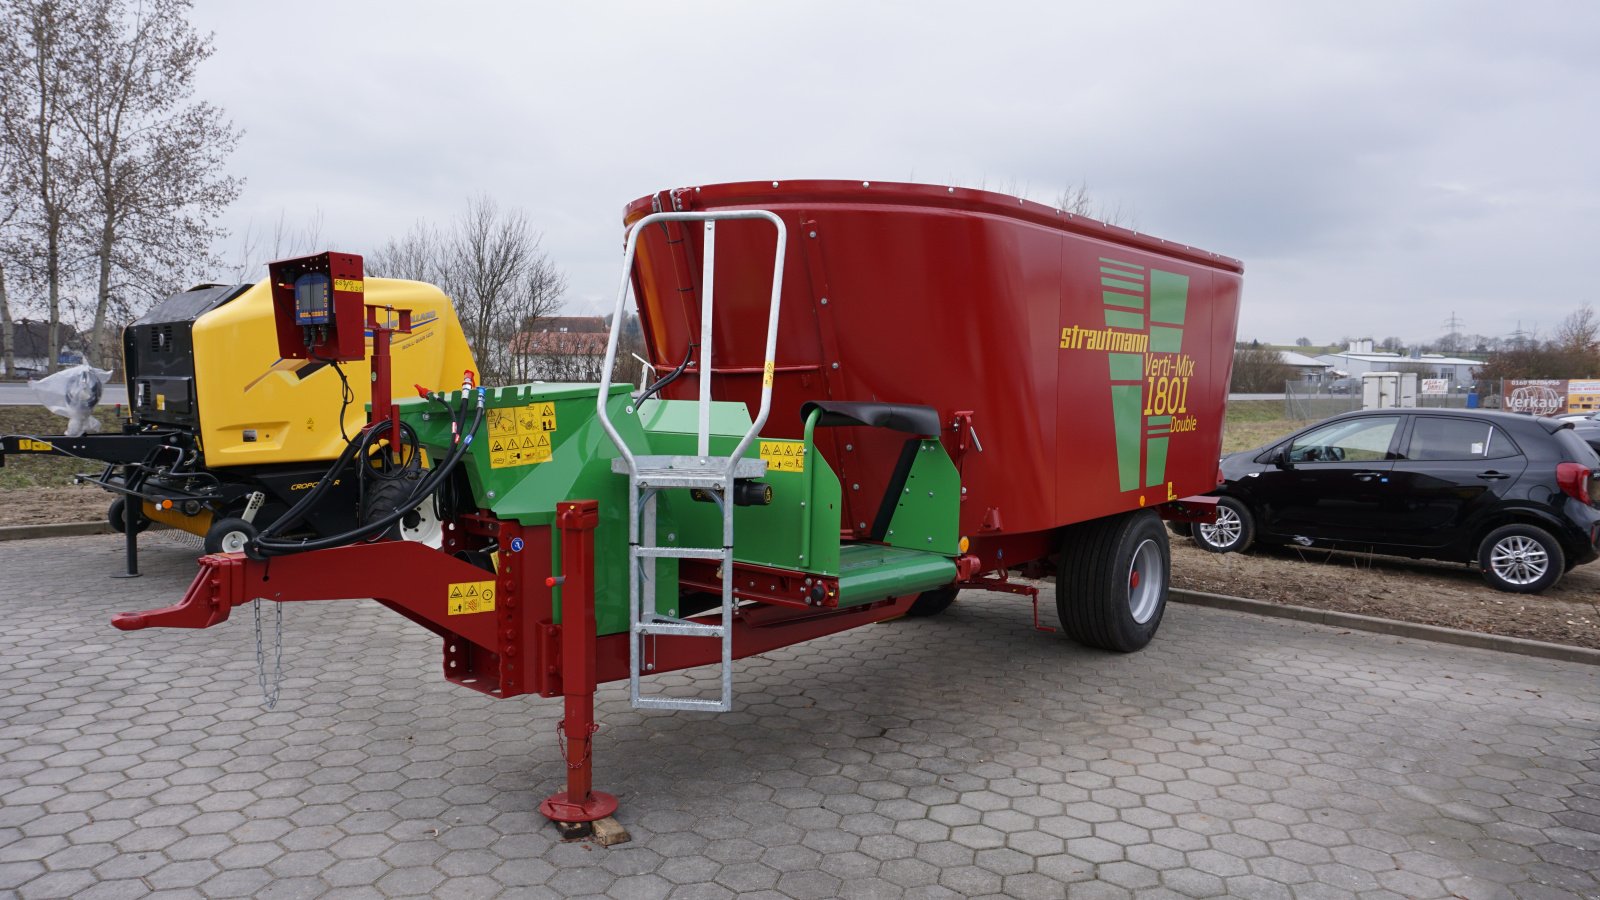 Futtermischwagen des Typs Strautmann Verti-Mix 1801 Double, Neumaschine in Rötz (Bild 1)